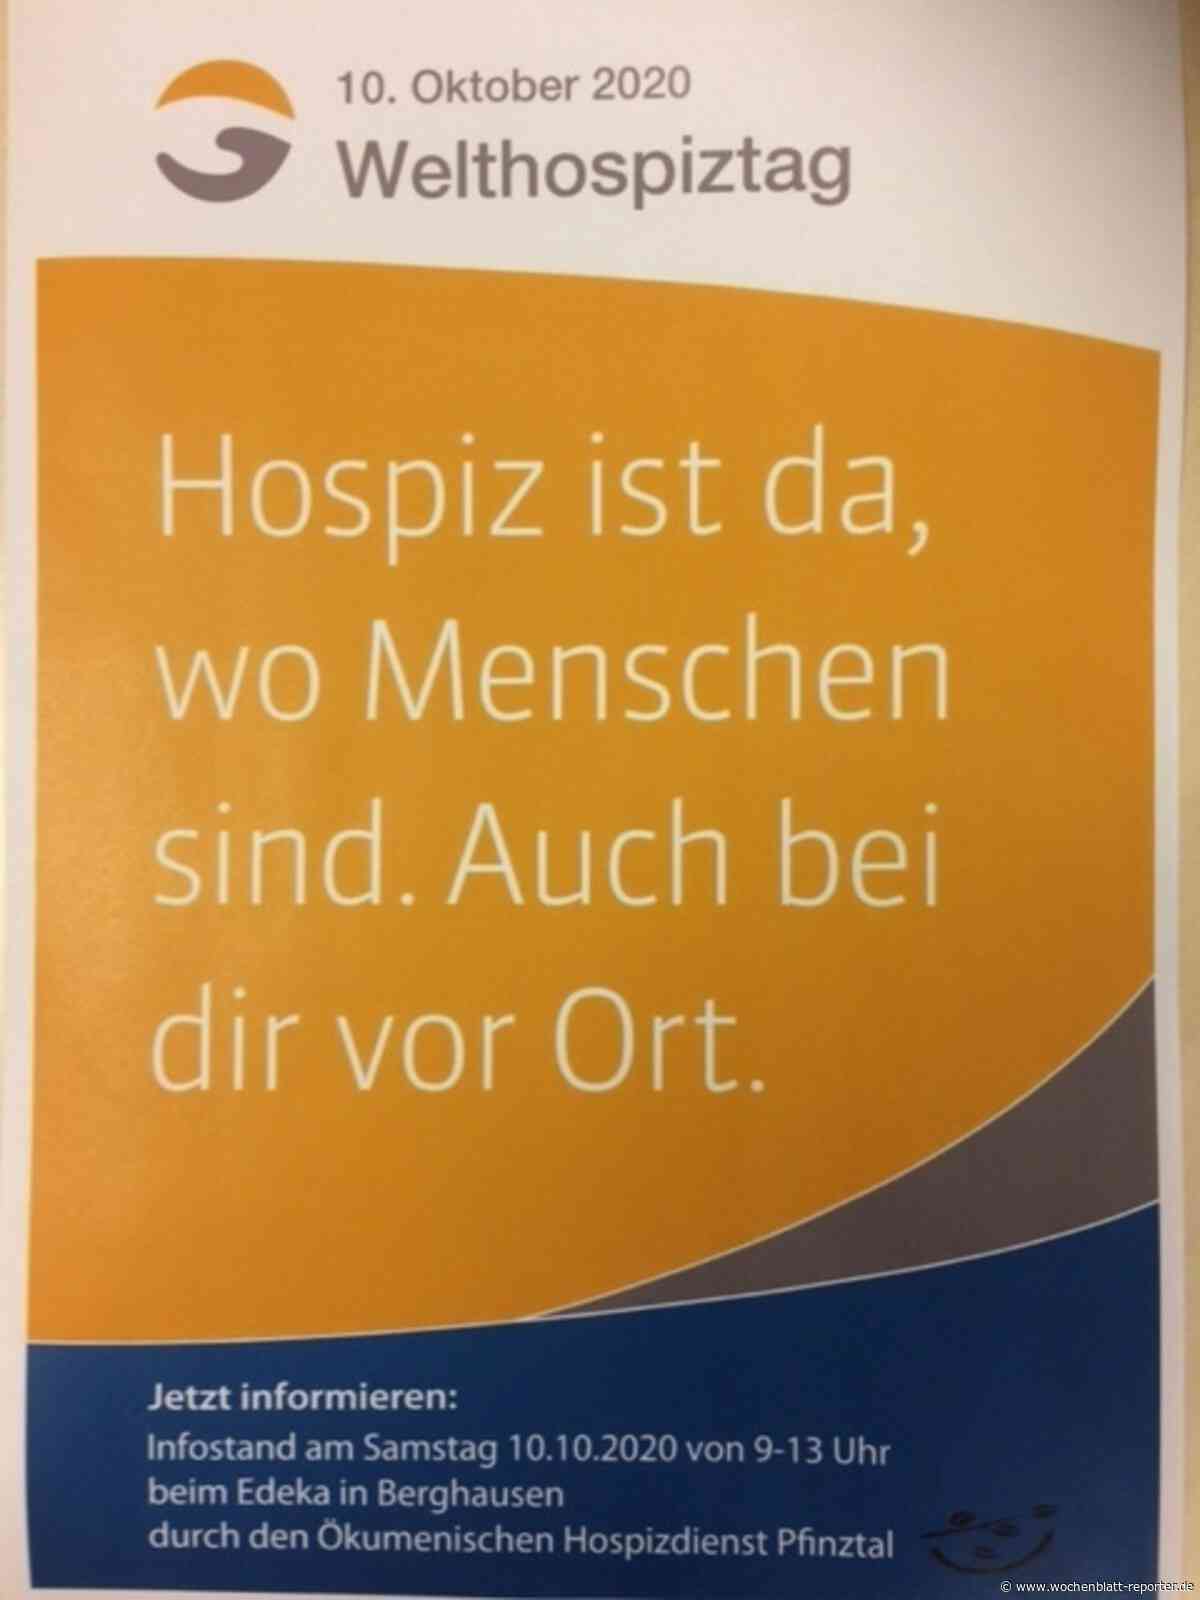 Ökumenischer Hospizdienst Pfinztal: Welthospiztag am 10. Oktober - Karlsruhe - Wochenblatt-Reporter